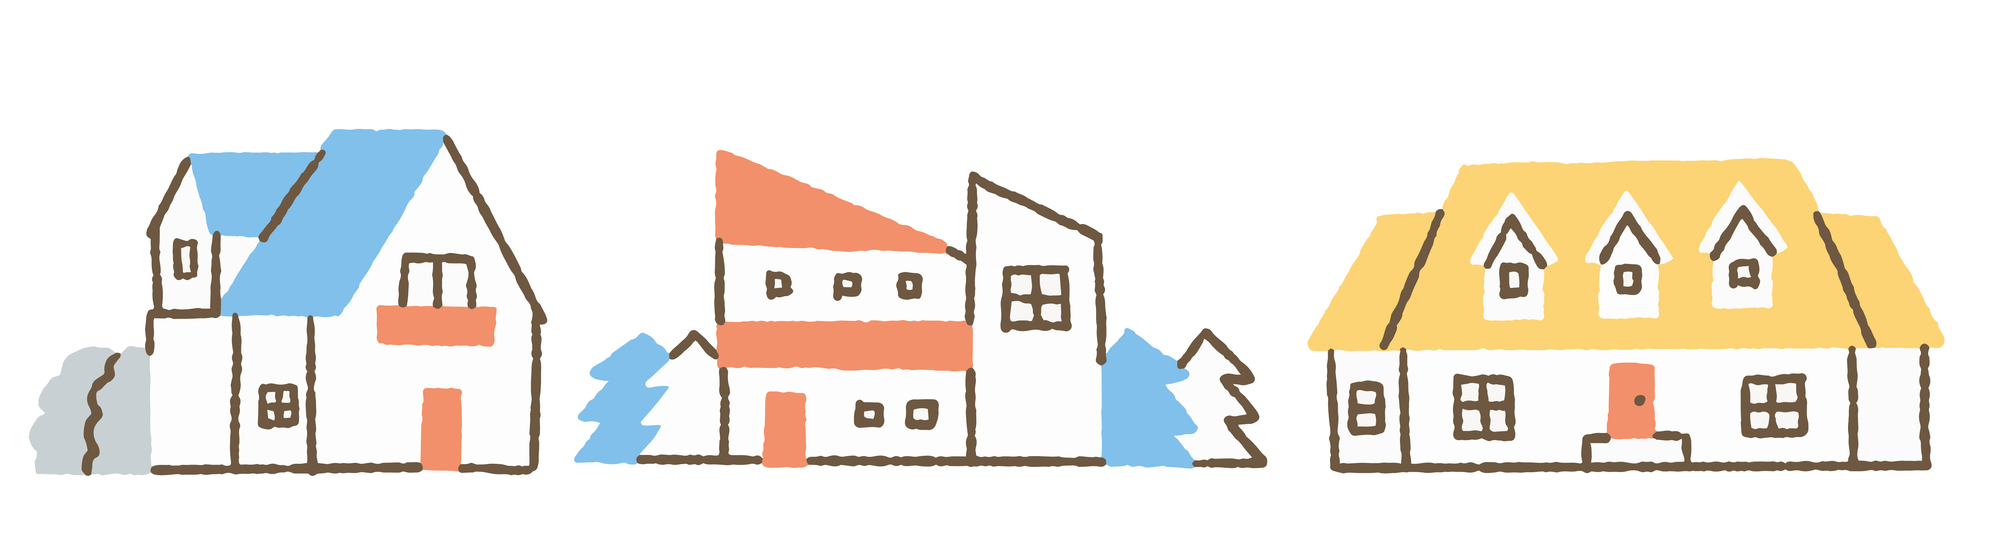 戸建て住宅の屋根の形